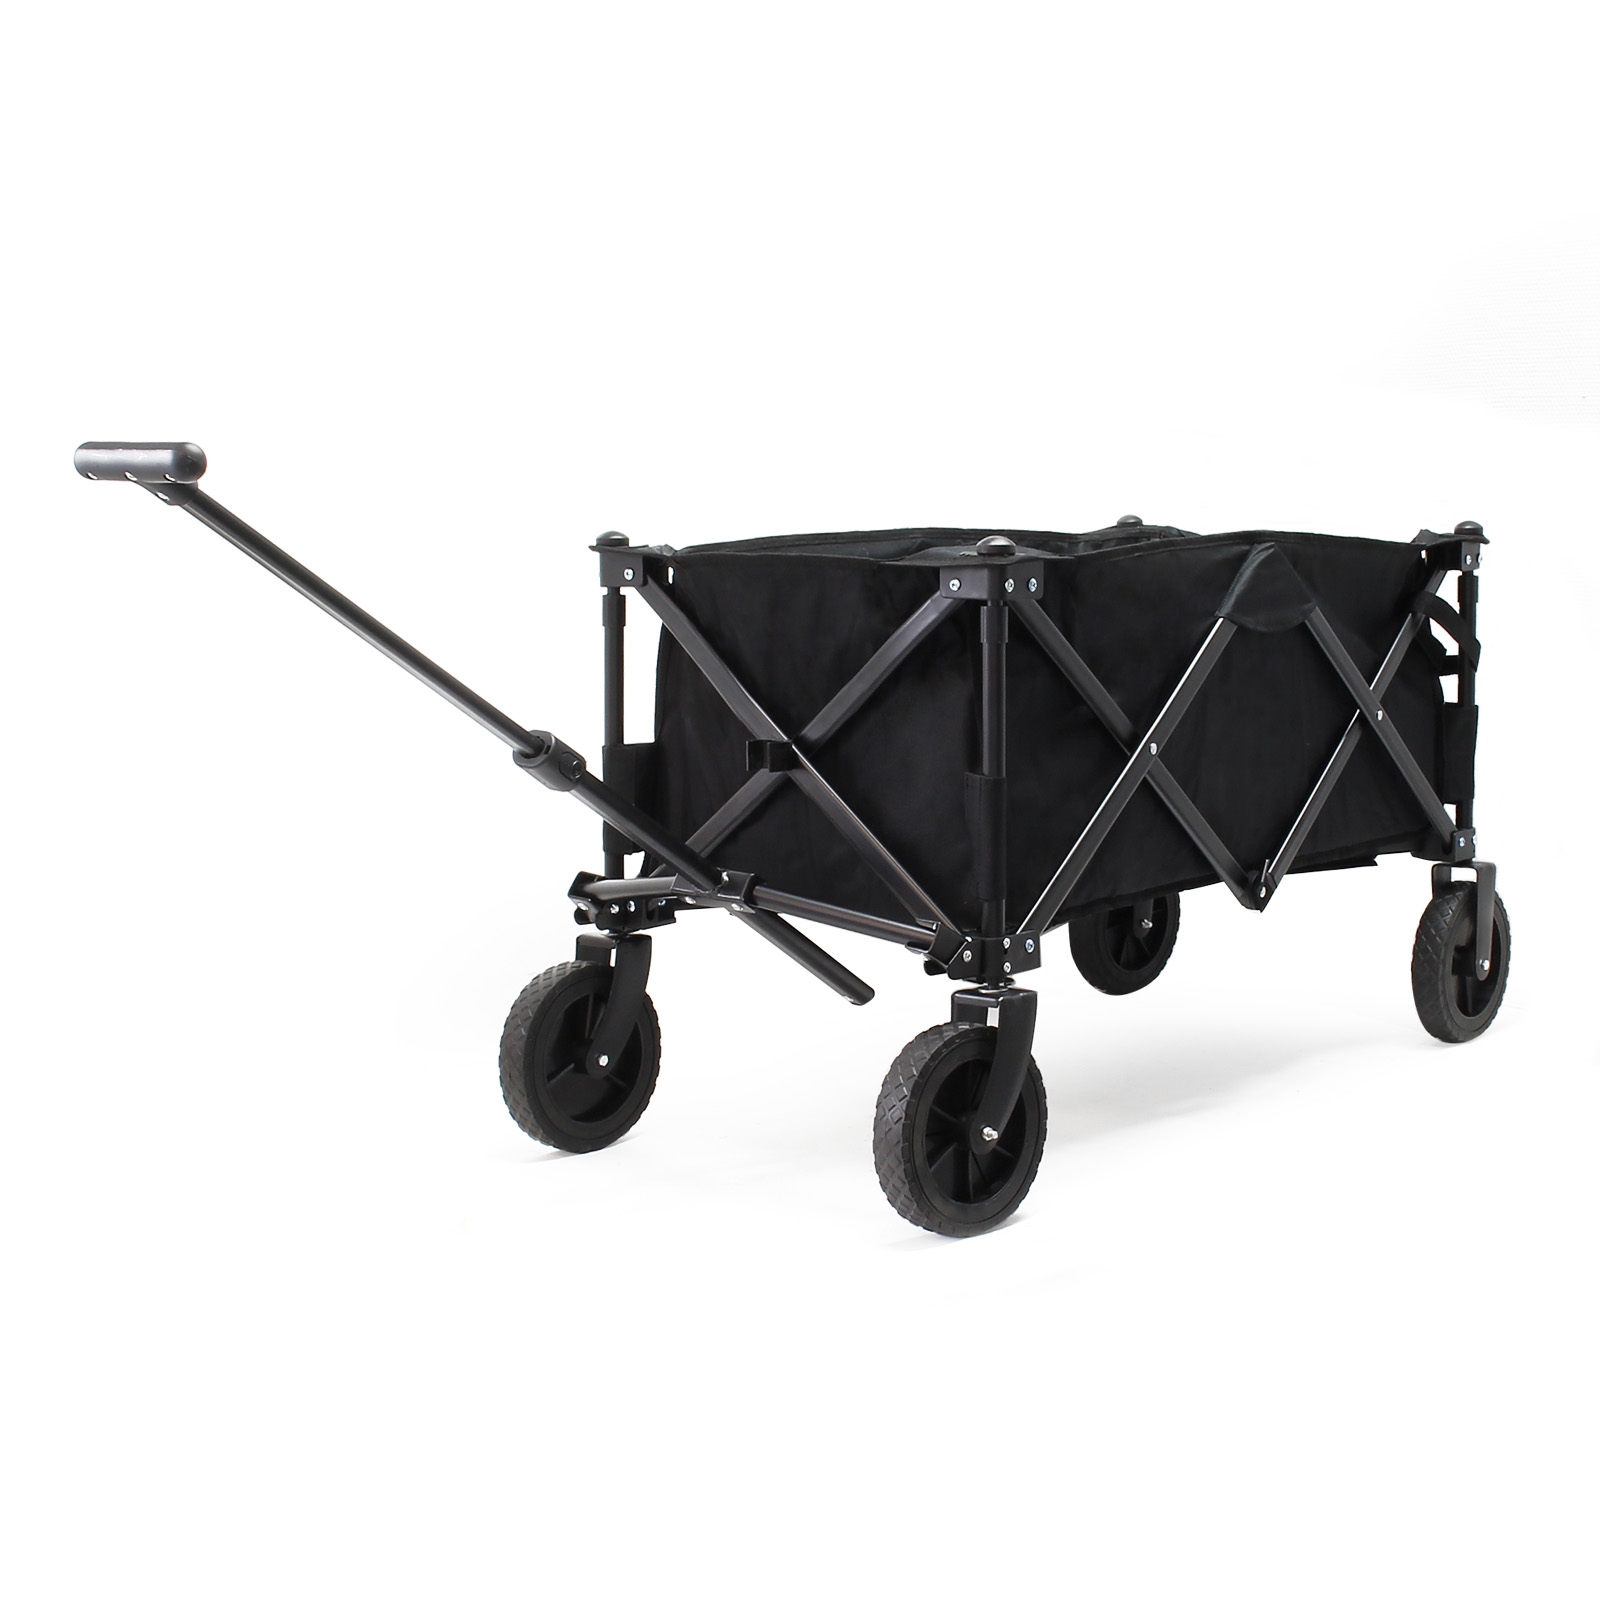 Toboli Chariot Enfant Pliable Gris 100 kg Poignée Télescopique Transport  Outils Tout-terrain Plage